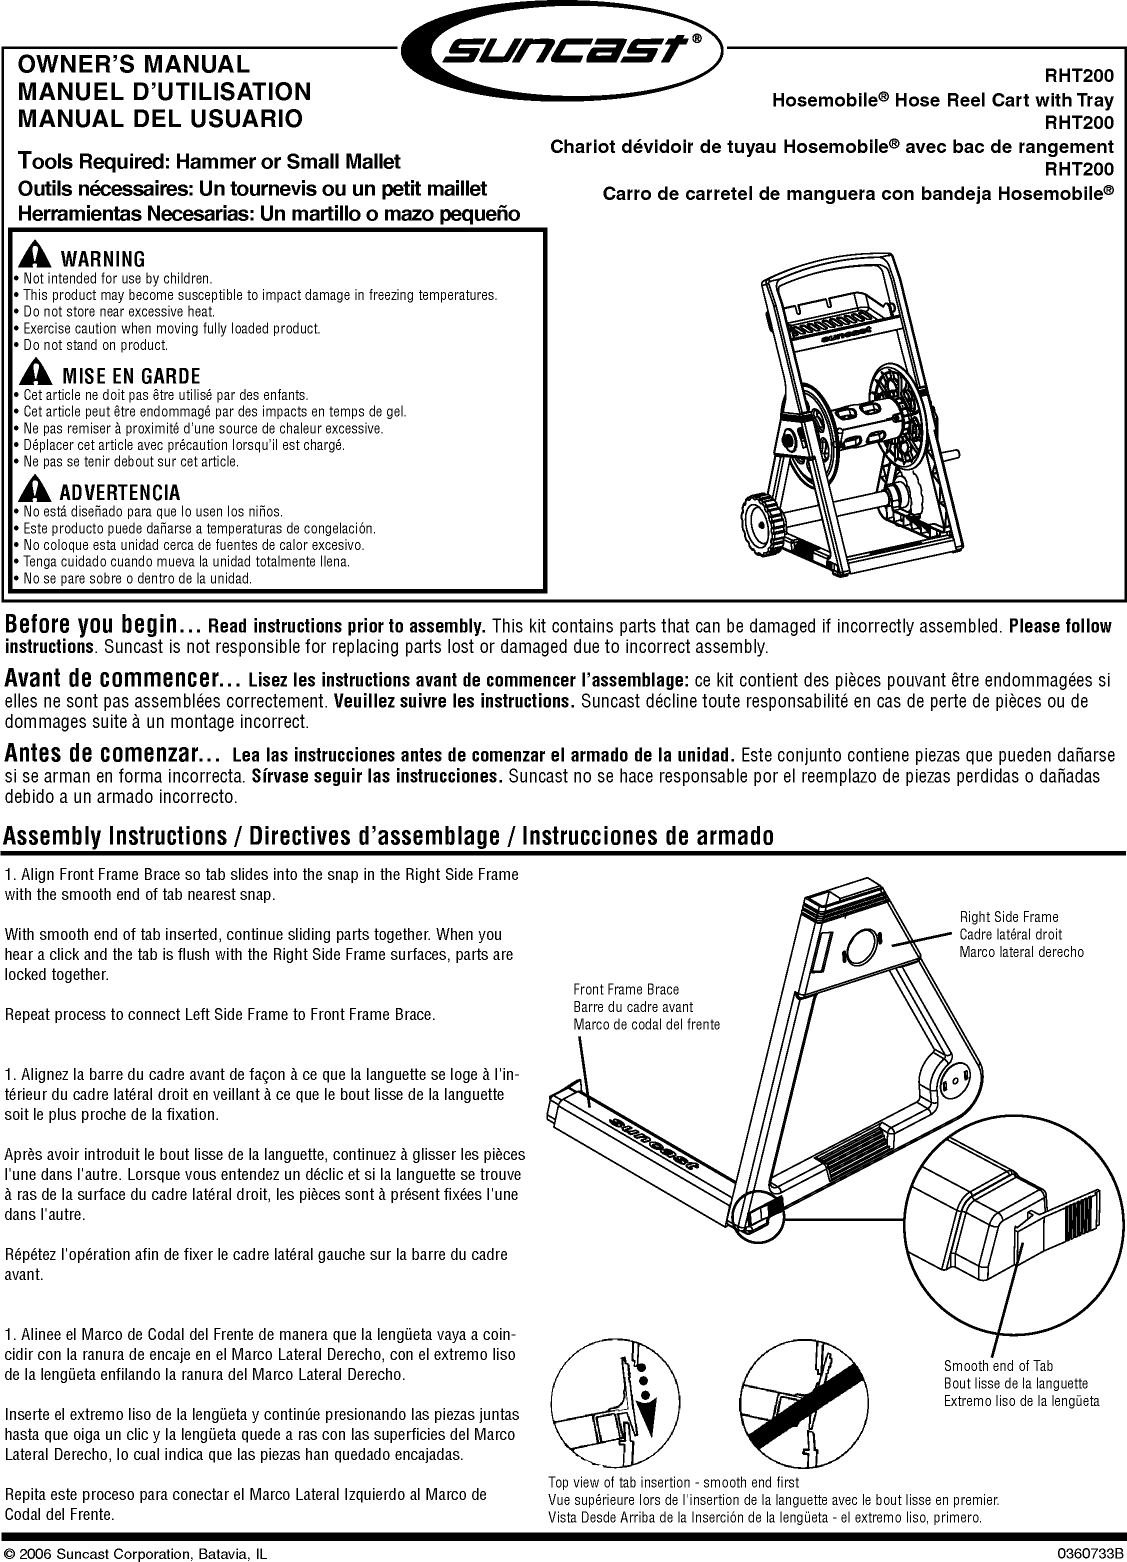 Suncast Hosemobile Rht200 Users Manual